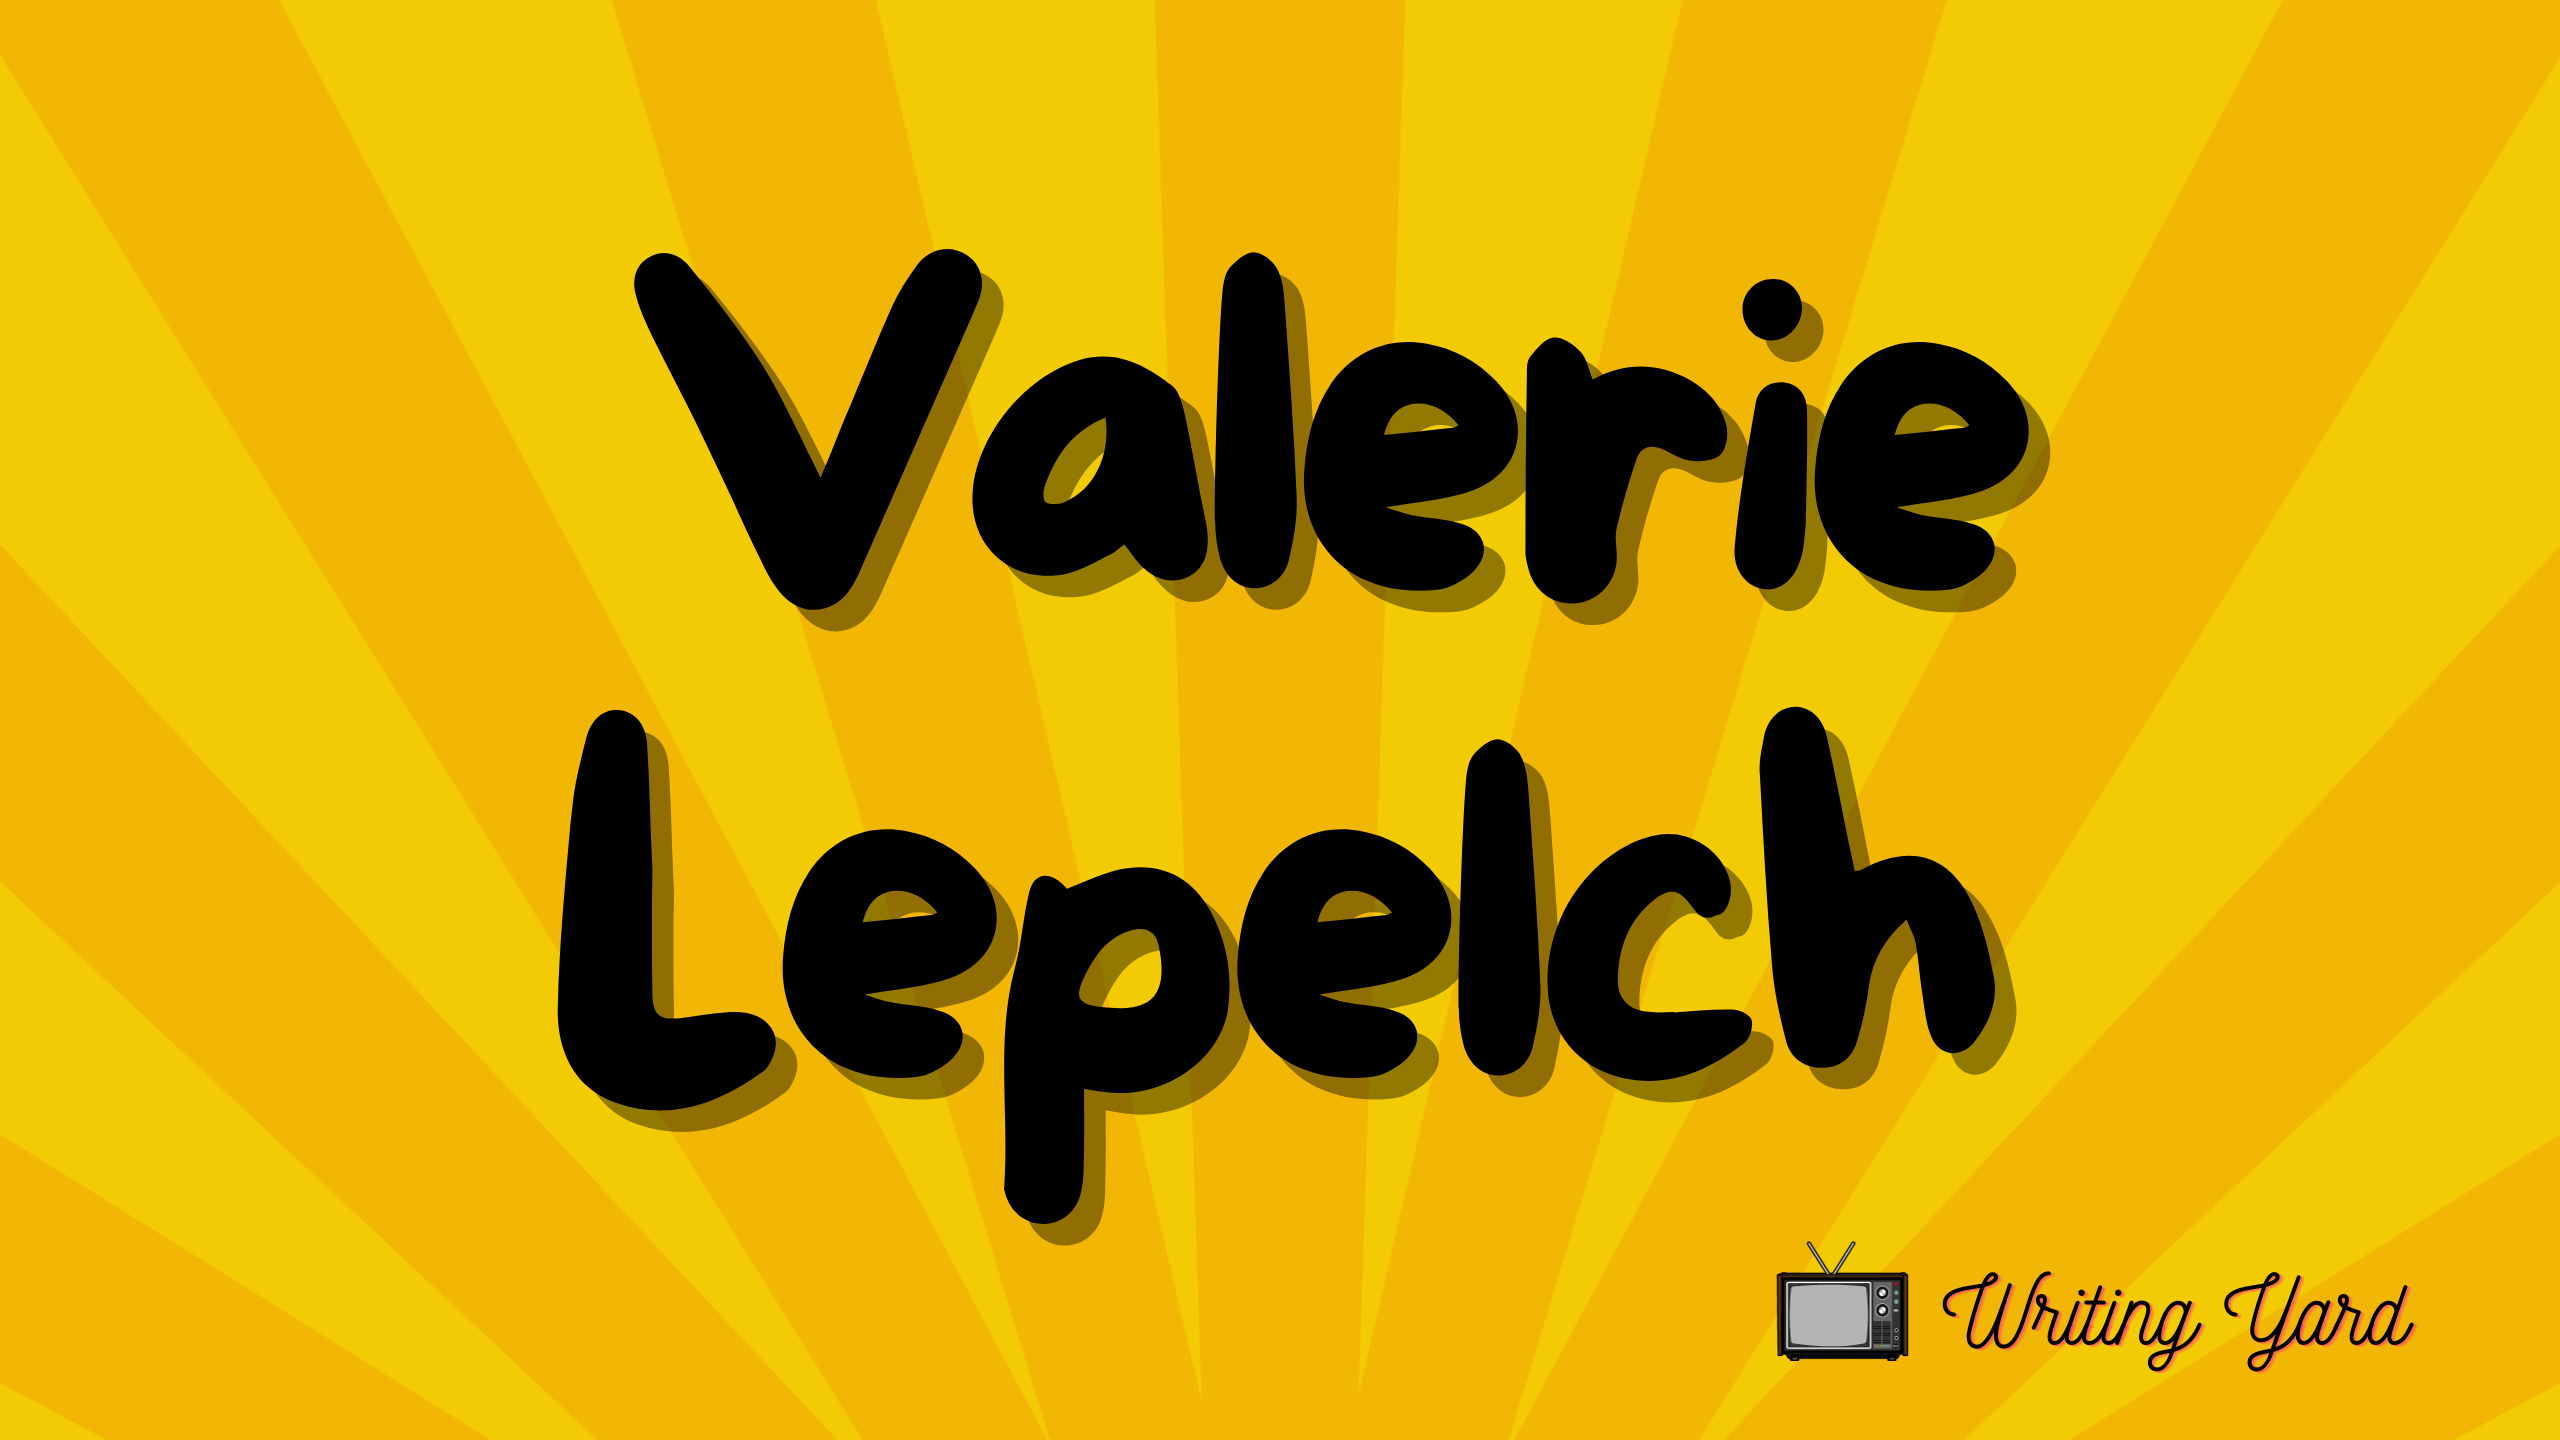 Valerie Lepelch